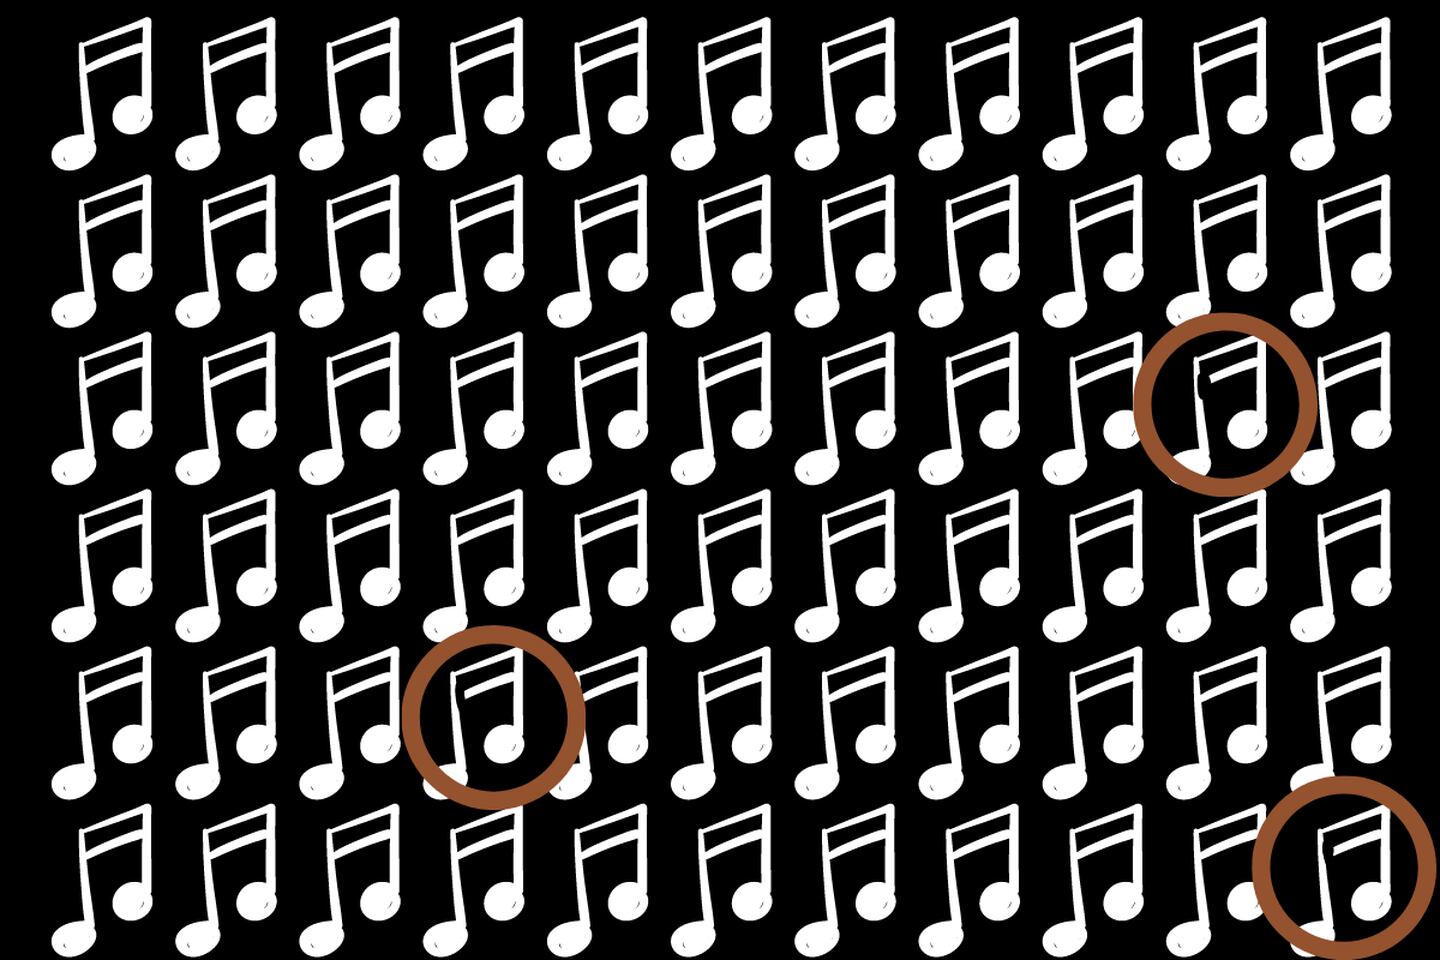 Muchas notas musicales en un fondo negro